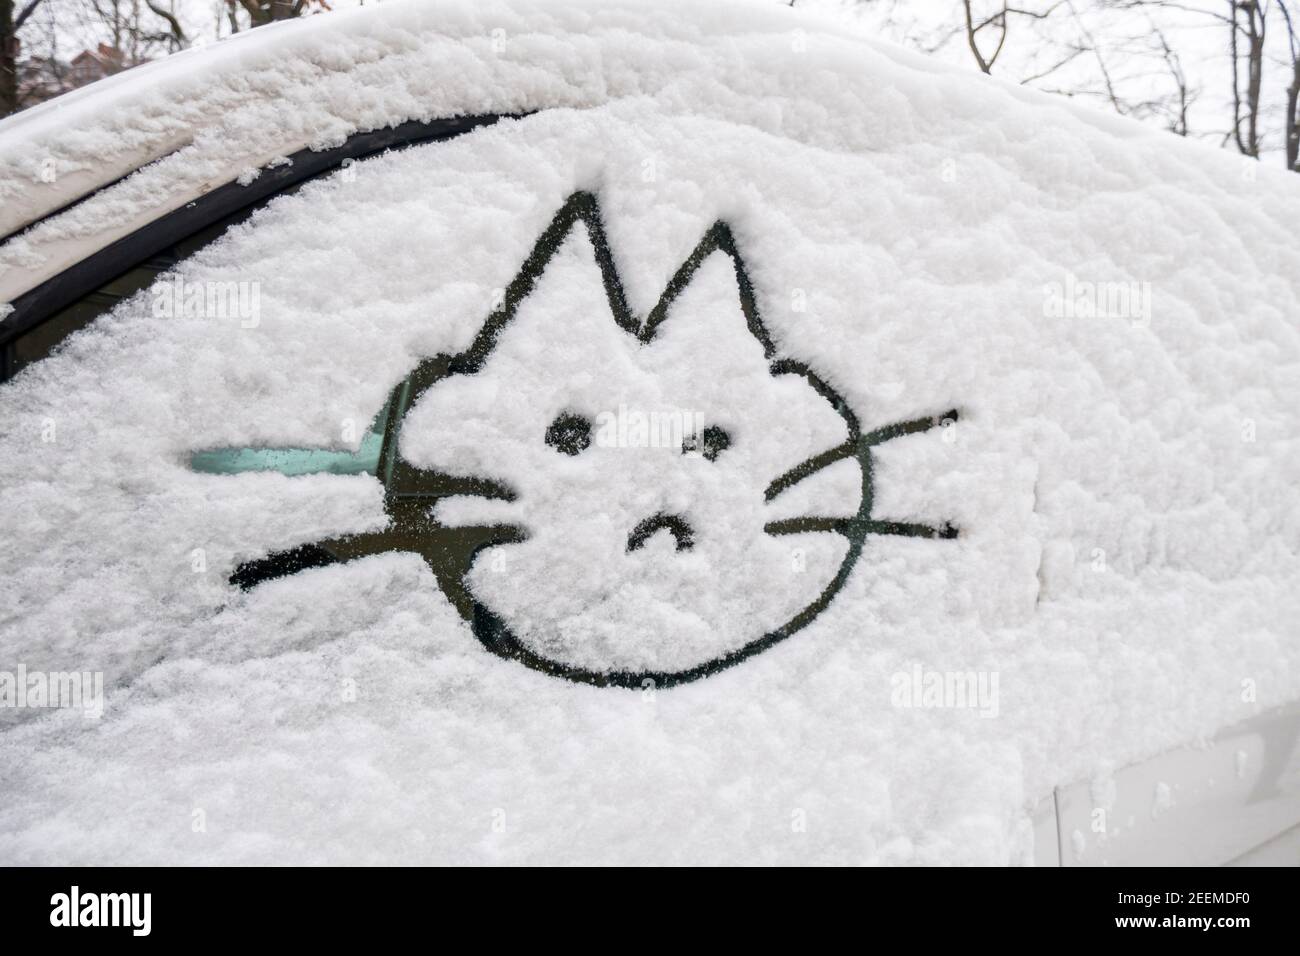 Wintereinbruch in Berlin im Februar 2021 . Verschneite Autos in Kreuzberg, Katze in Schnee auf Autoscheibe gemalt. Kältewelle, Russenpeitsche, eisige Stockfoto